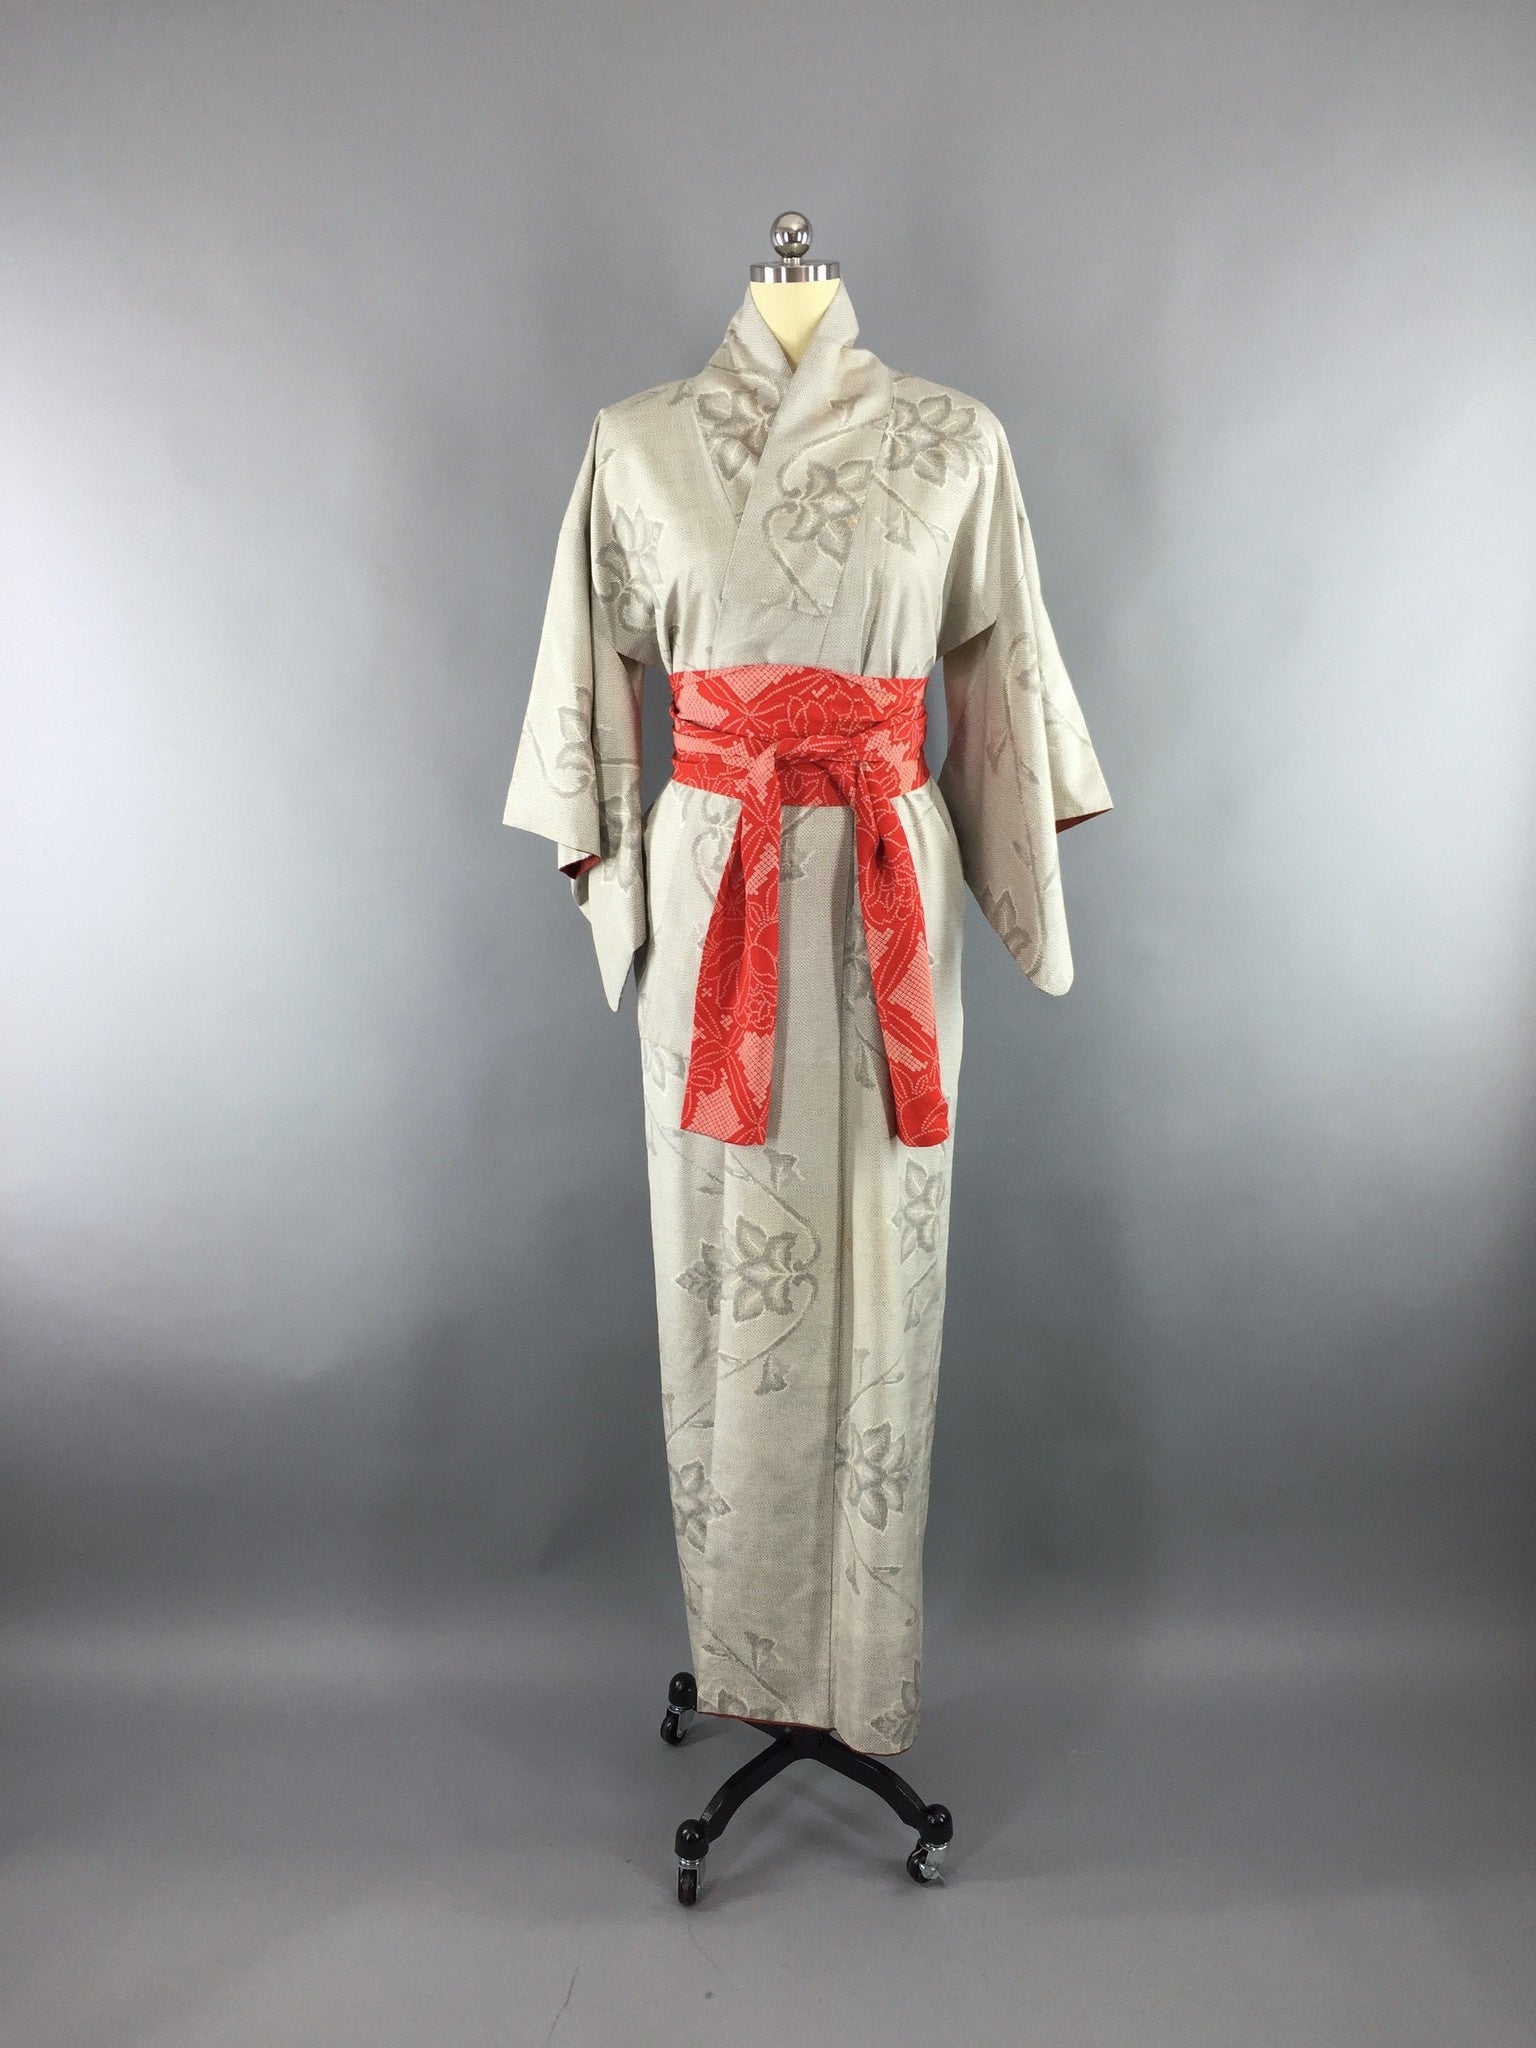 1950s Vintage Kimono Robe with White and Black Floral Print